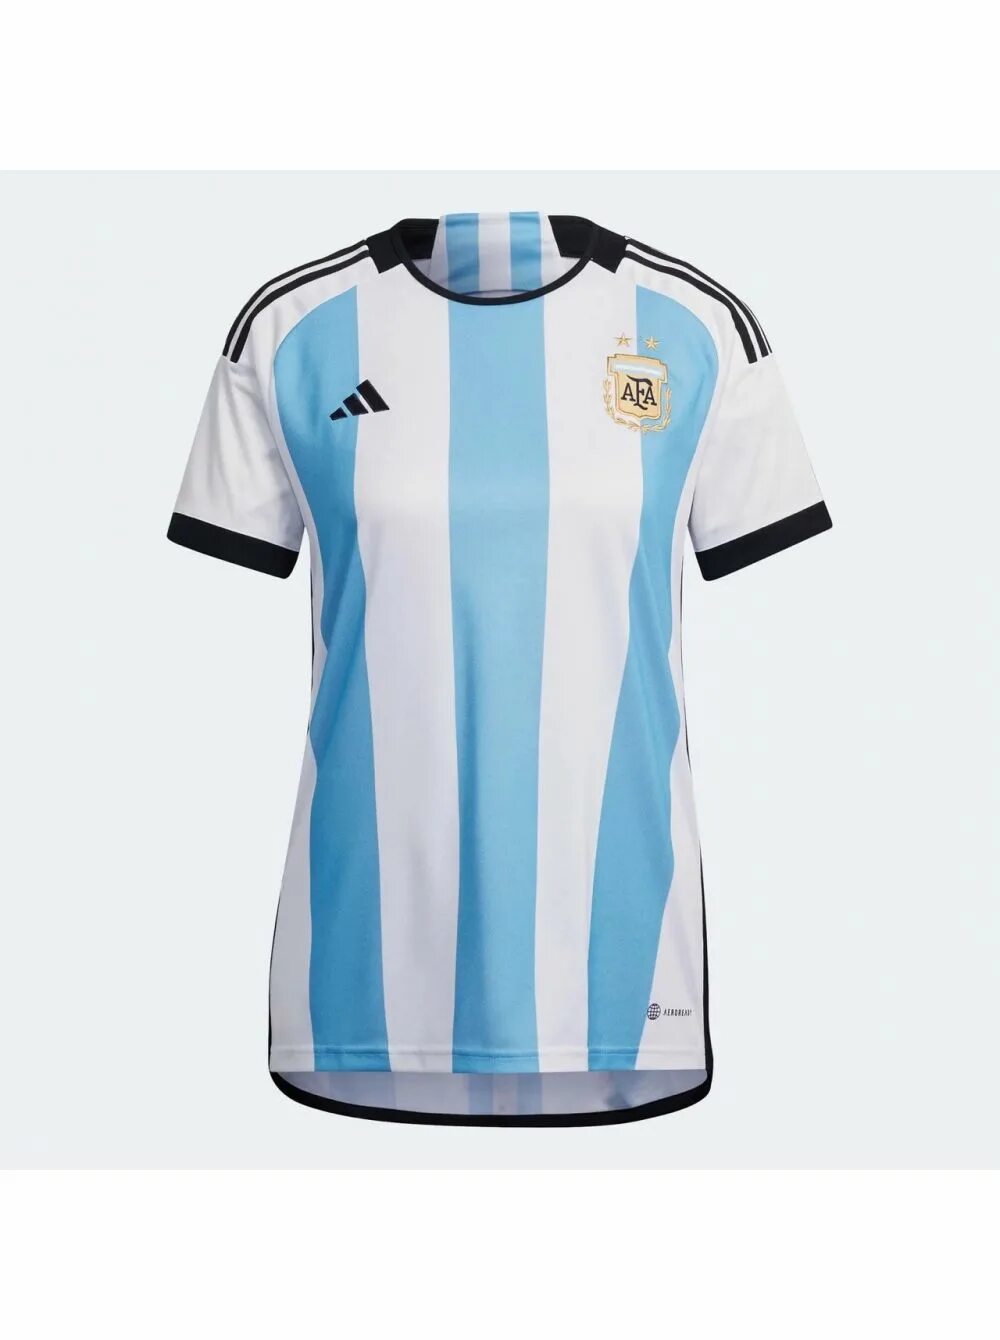 Купить через аргентину